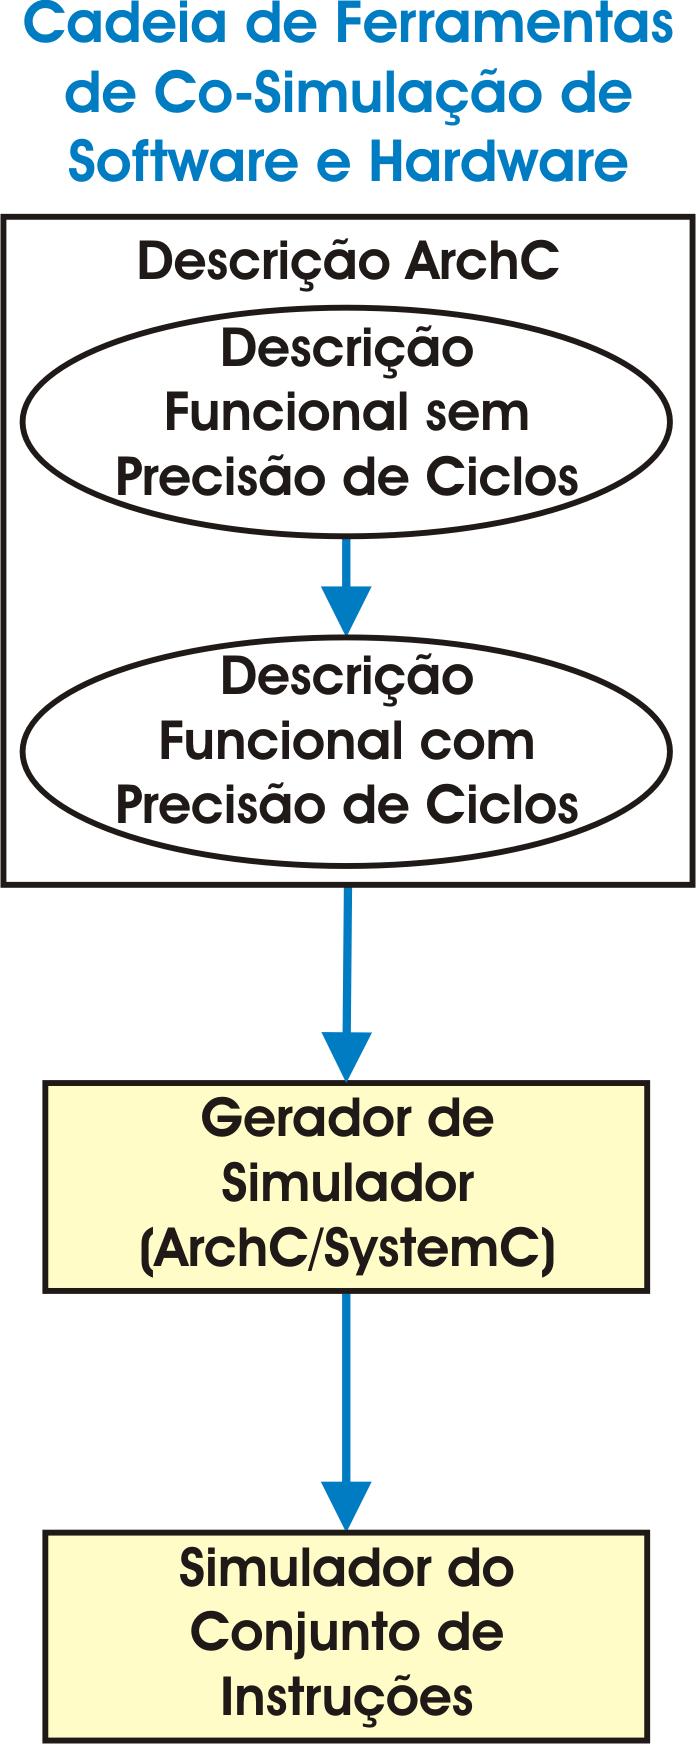 18 3 METODOLOGIA O fluxo principal do projeto começa com a descrição do ASIP na ADL, primeiramente como um modelo funcional sem precisão de ciclos (UF), e depois refinado para o modelo com precisão